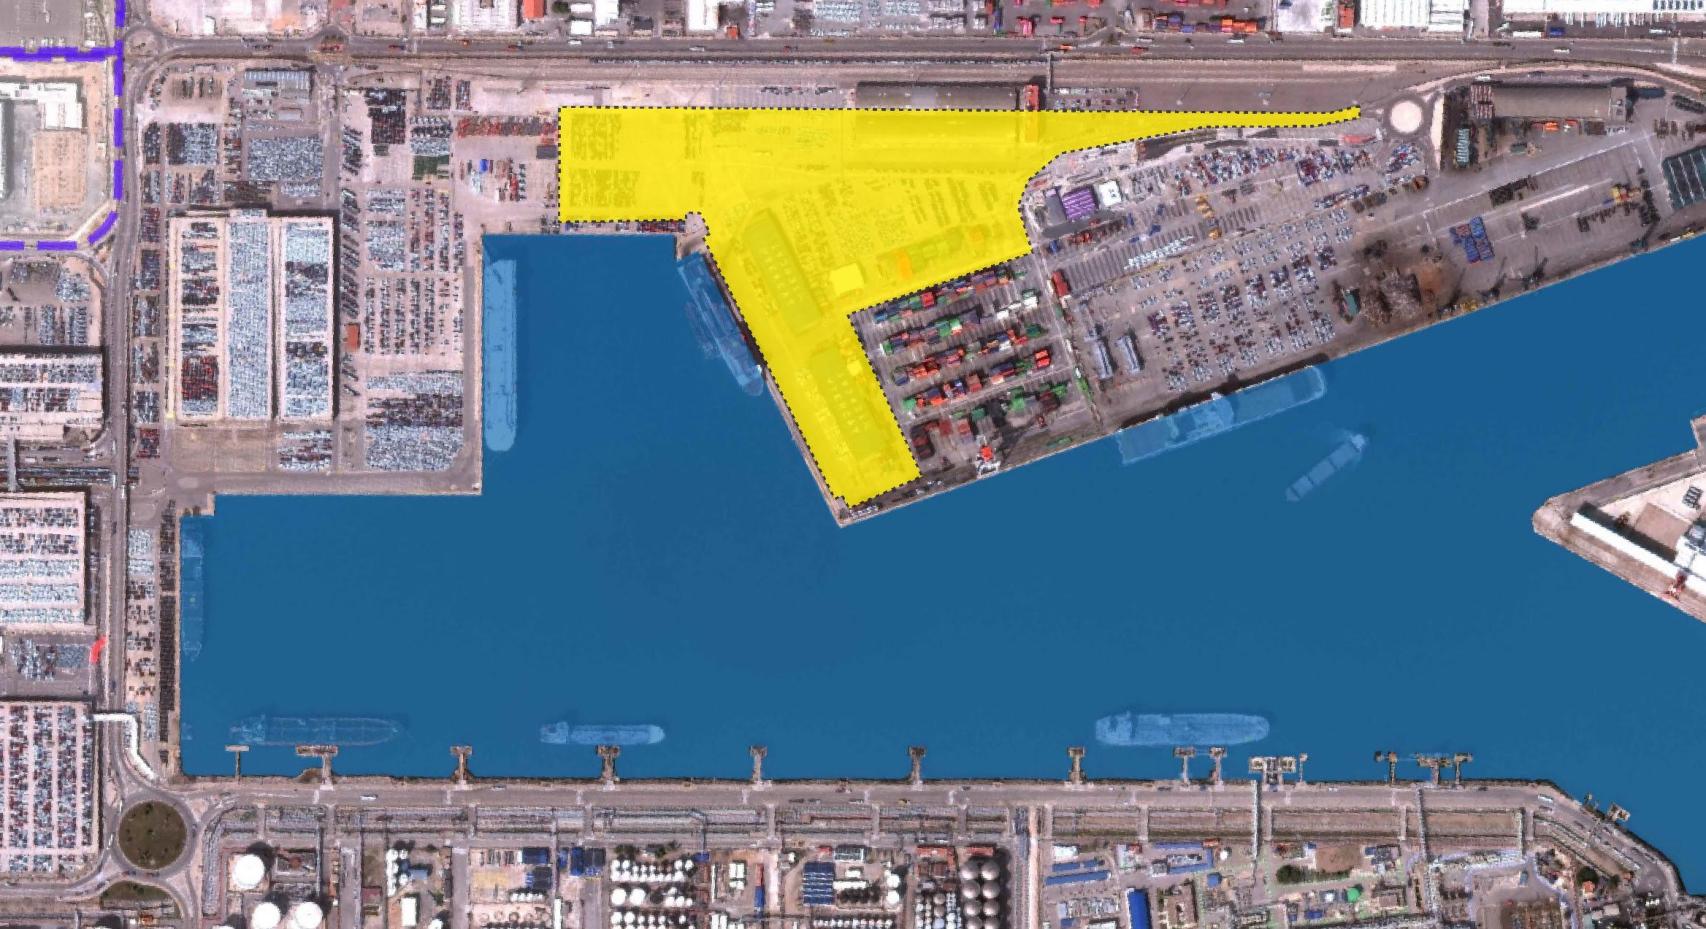 Espacio que ocupará la futura terminal de vehículos del puerto de Barcelona